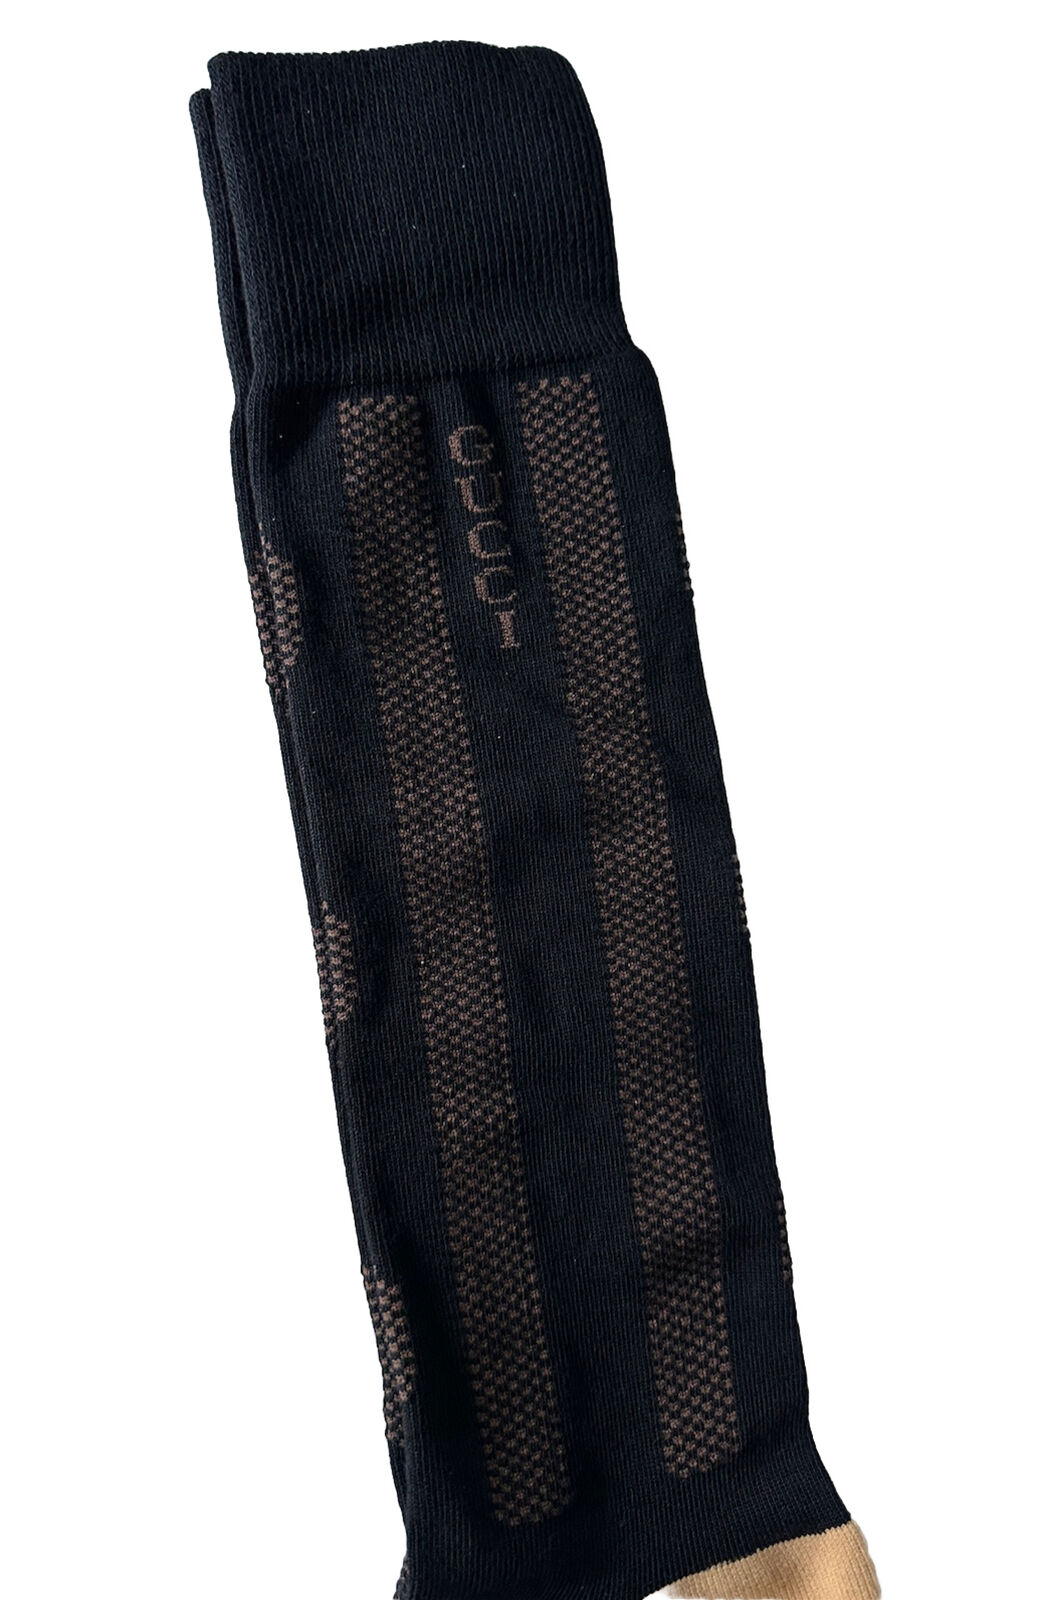 Носки NWT Gucci GG черные/бежевые, размер M (24–26 см), производство Италия 675854 